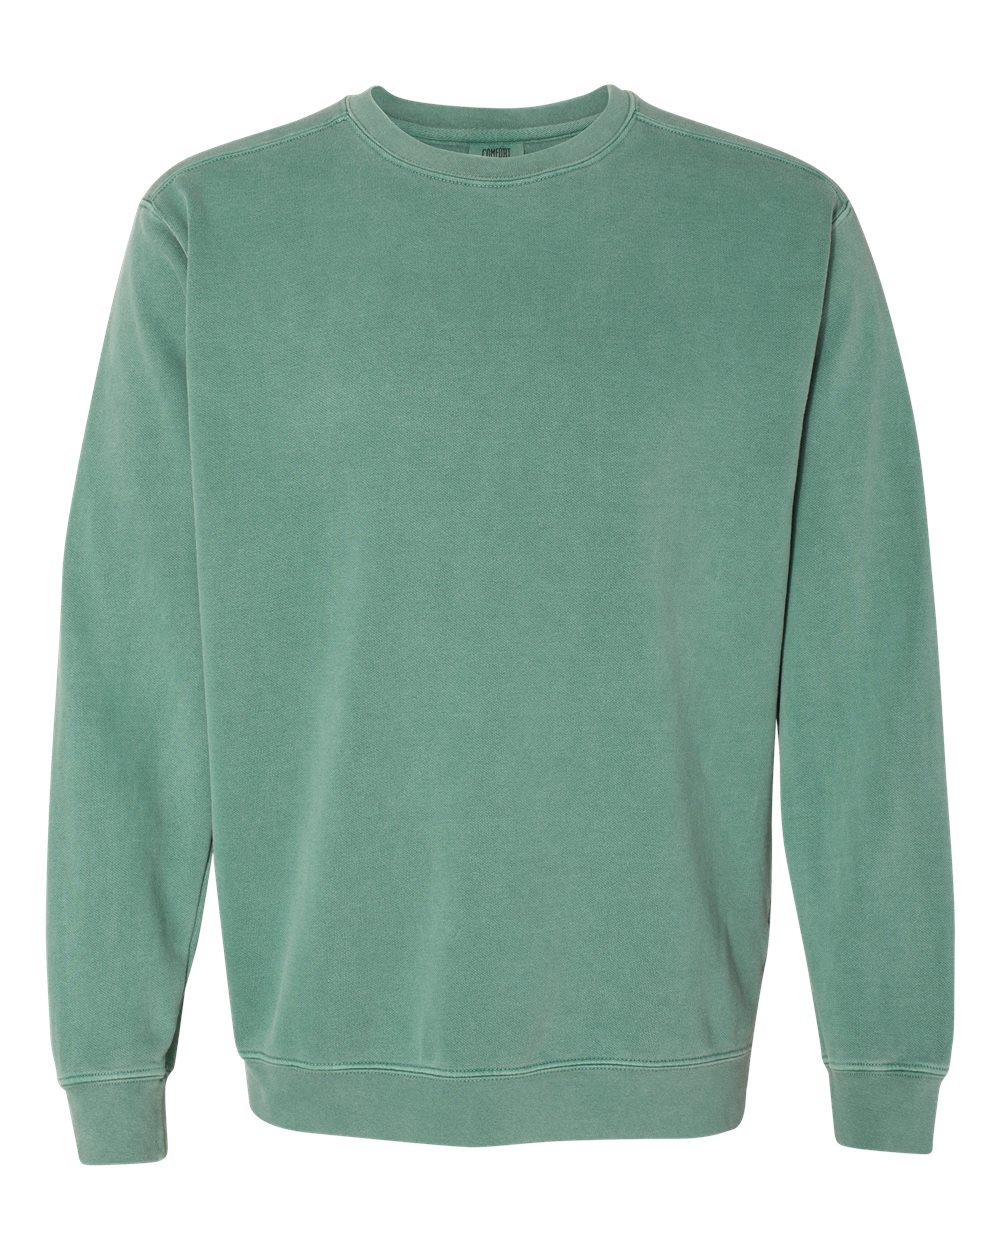 Comfort Colors Garment-Dyed Crewneck Sweatshirt (1566) in Light Green